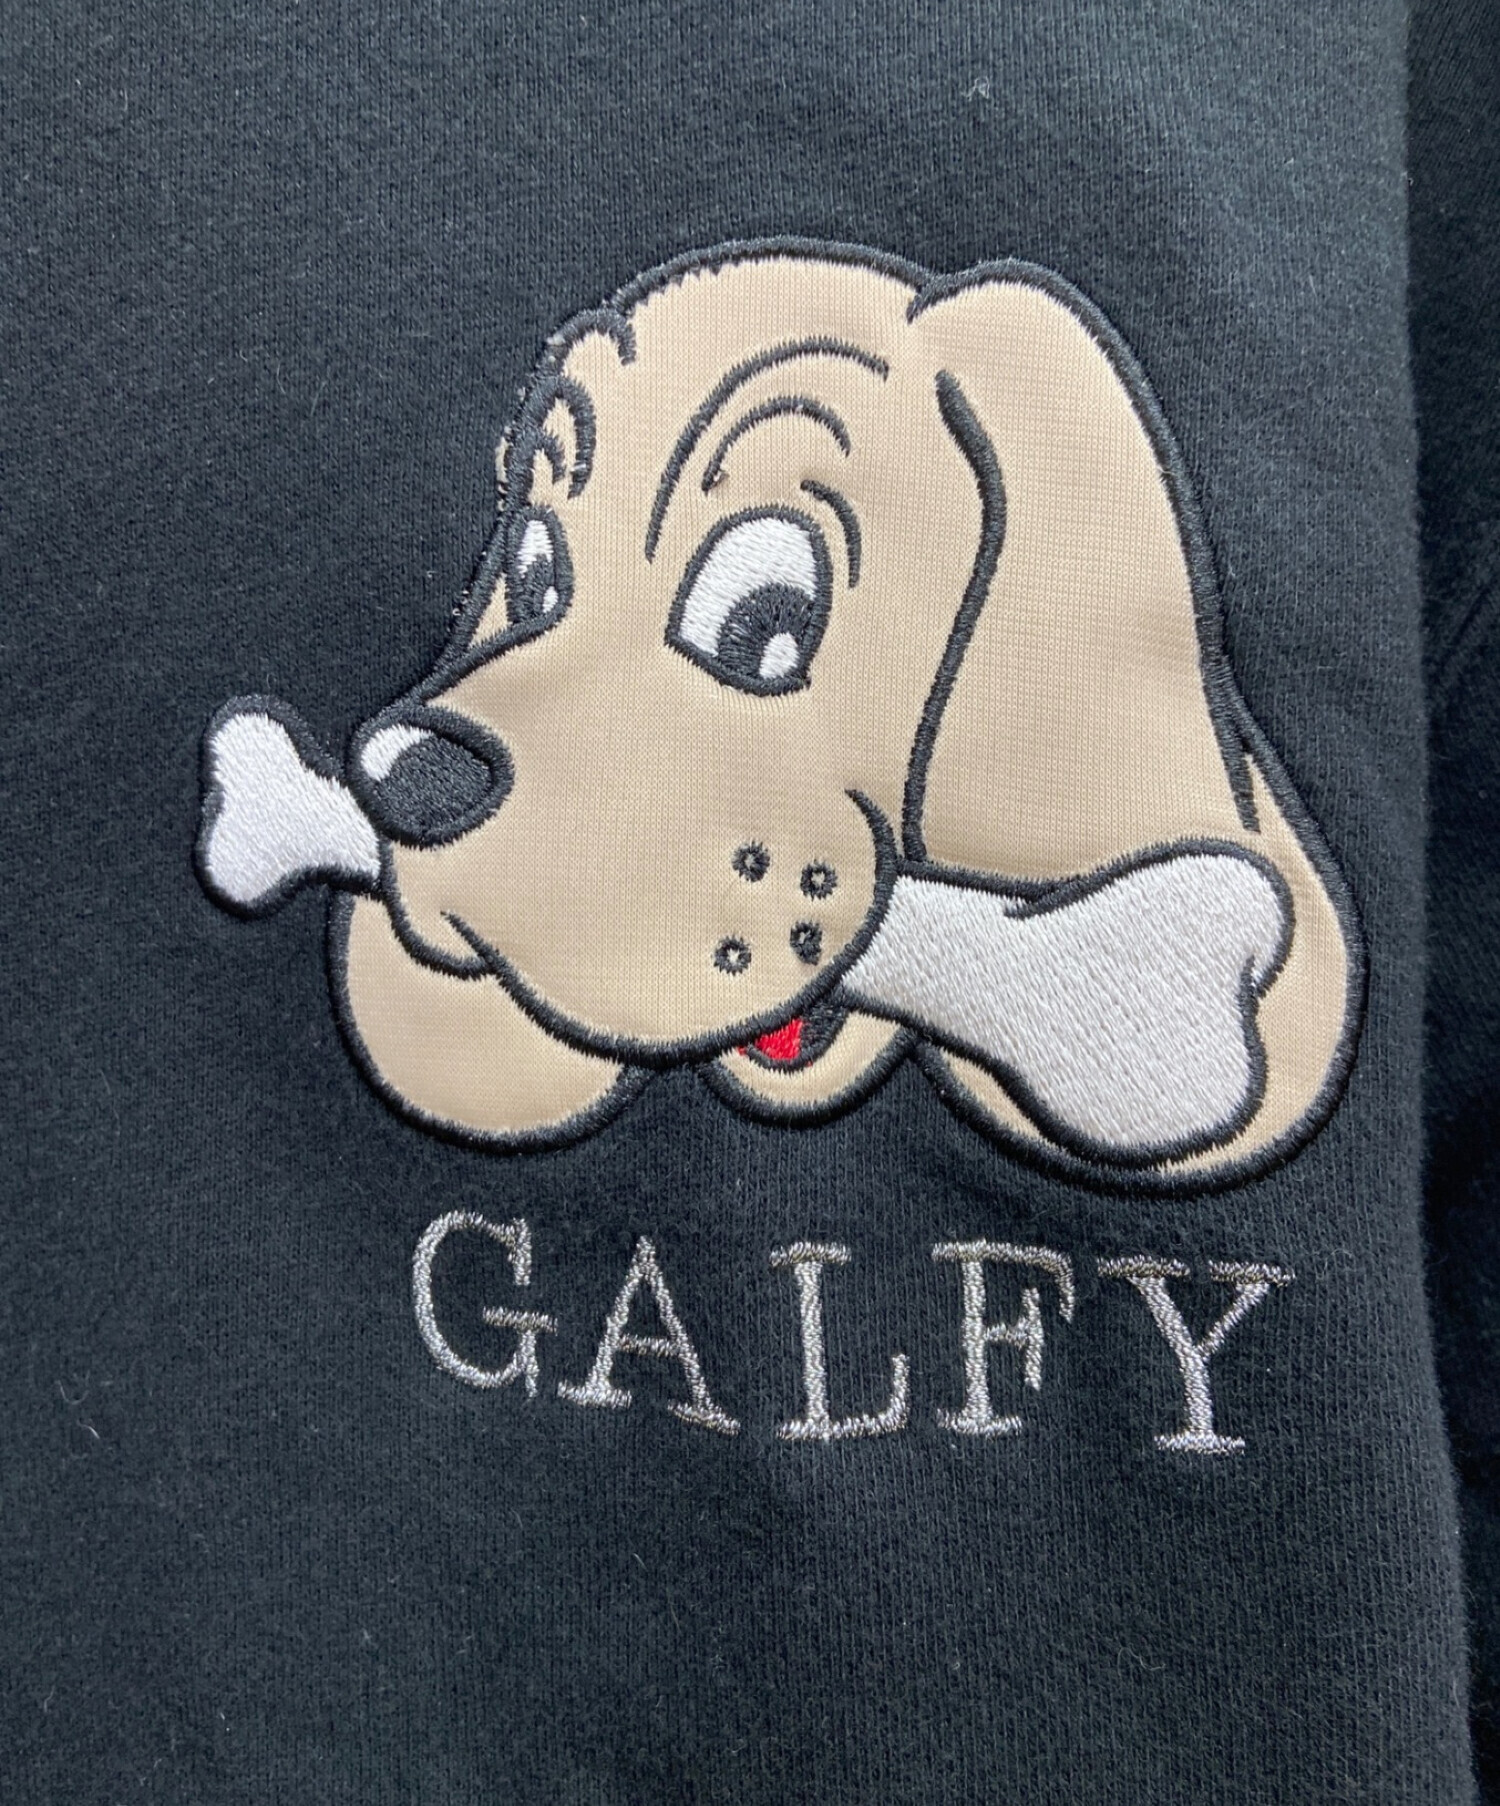 【完売品】galfy パーカー 90s 80s 犬ロゴ ネイビーブラック 刺繍